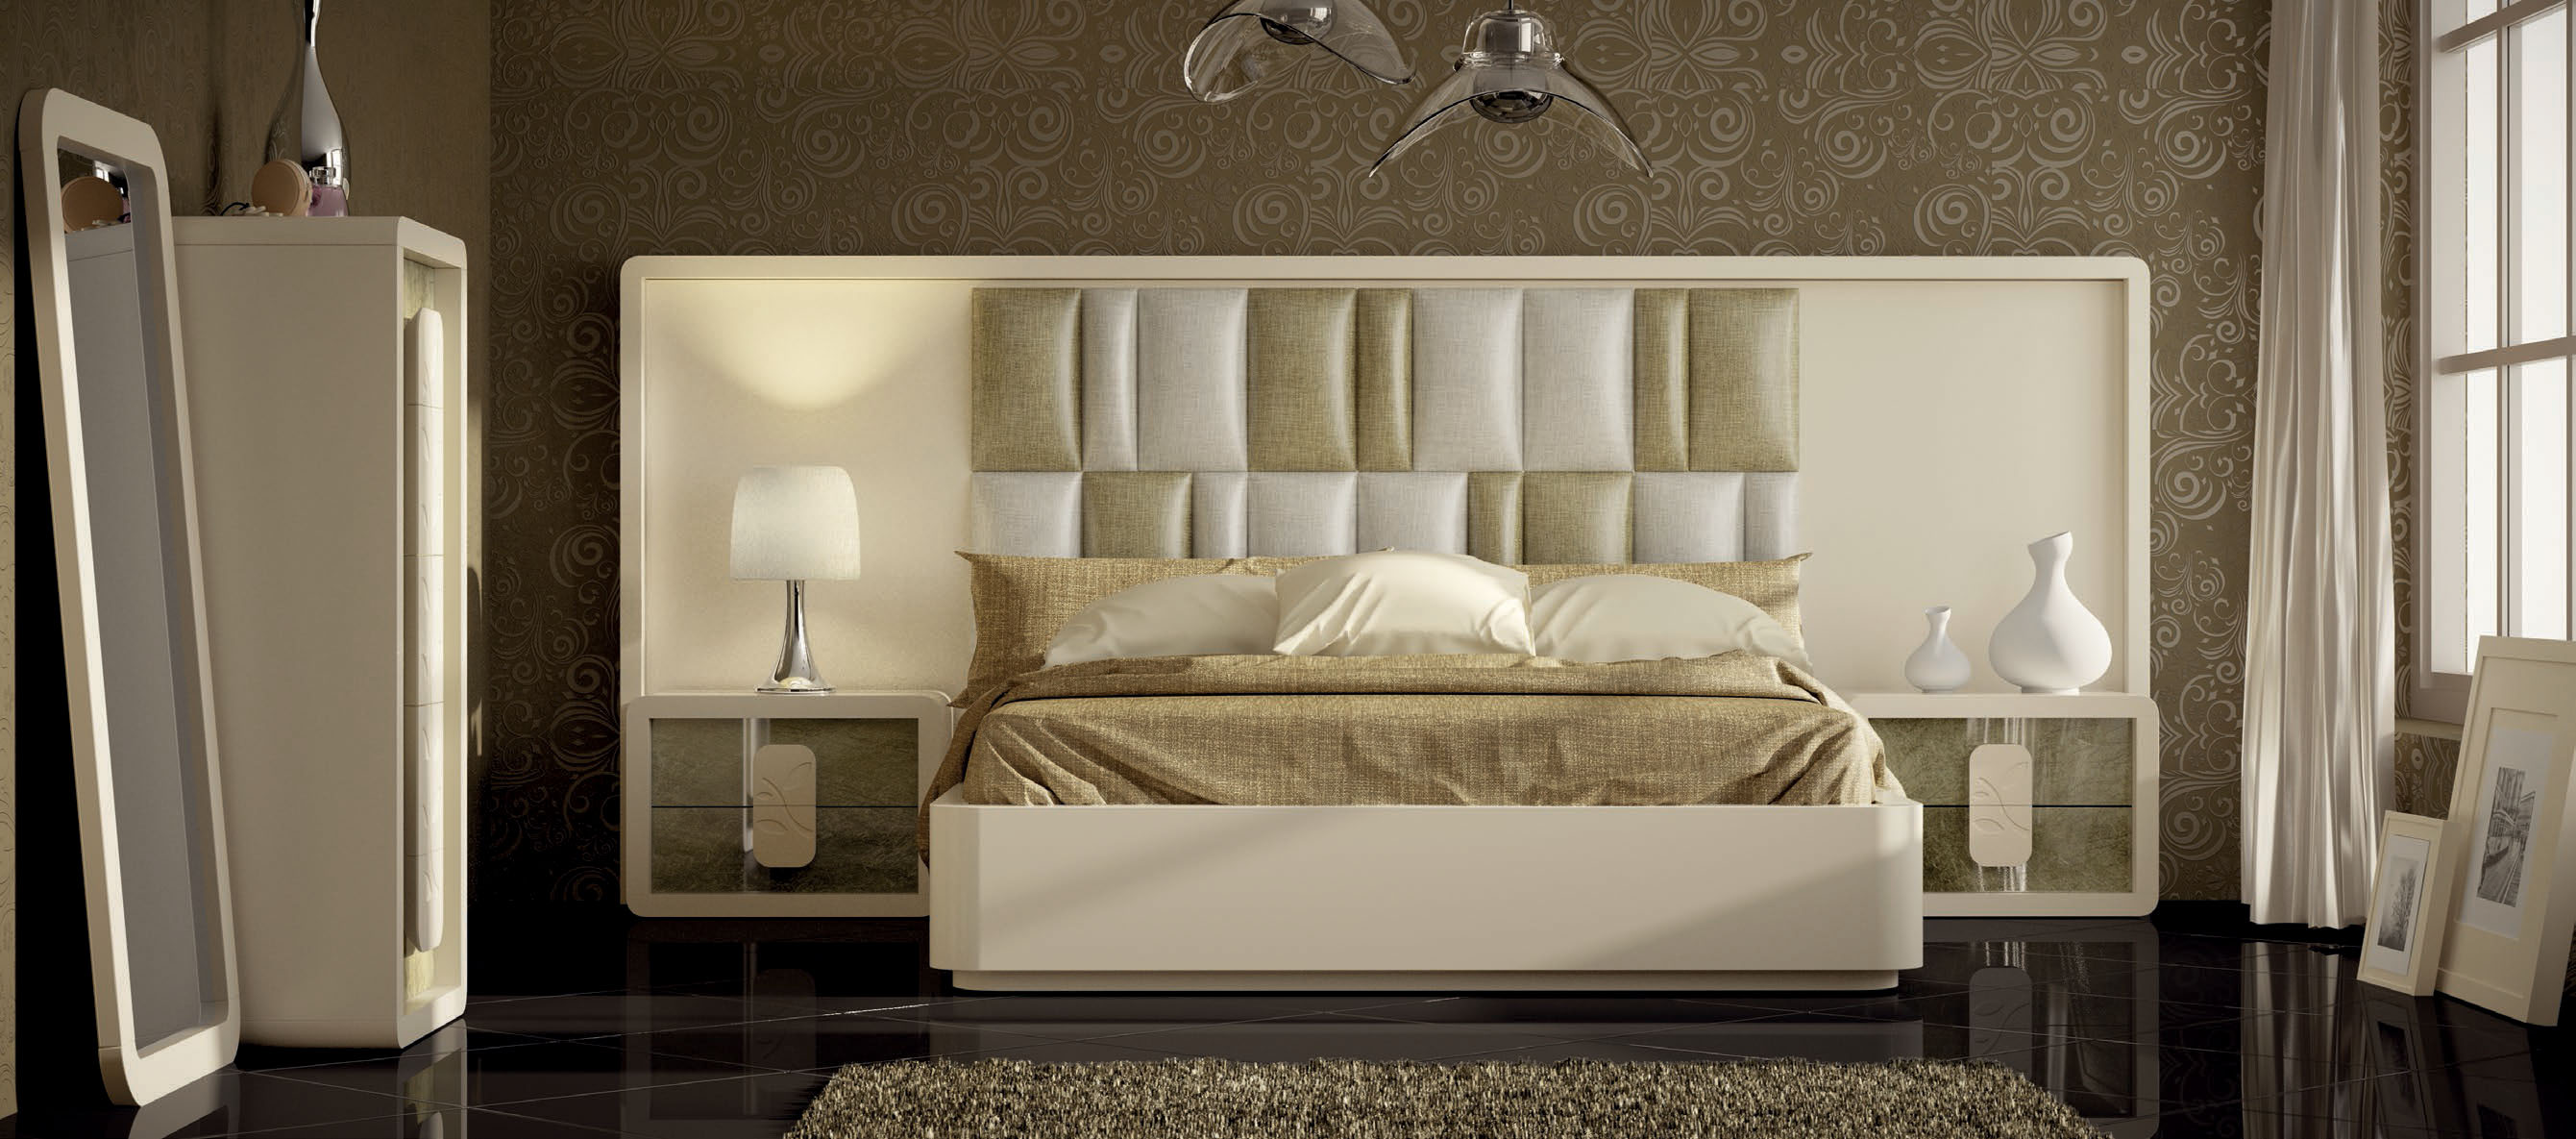 Brands Franco Furniture Avanty Bedrooms, Spain DOR 171